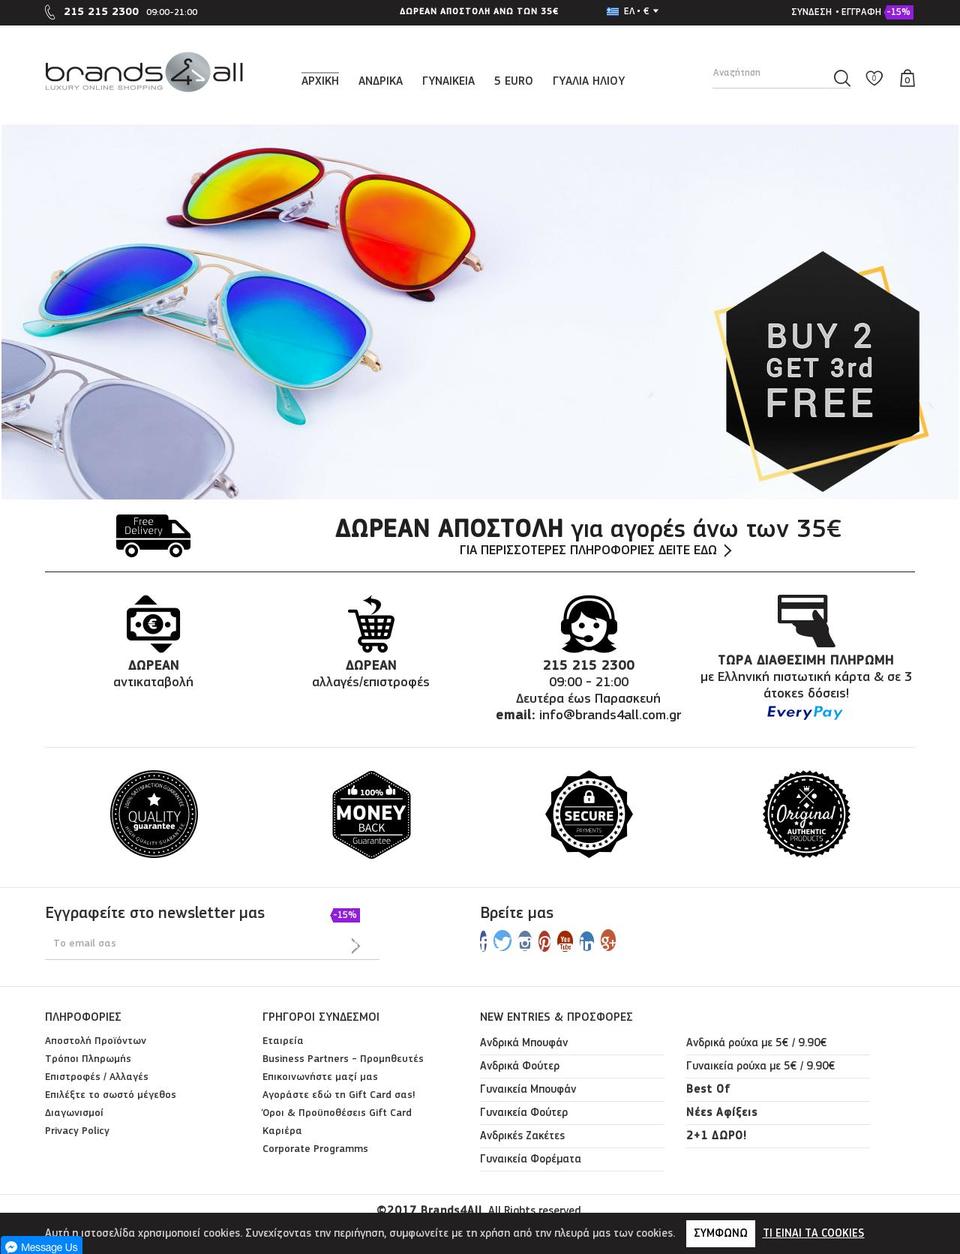 brandsforall.gr shopify website screenshot